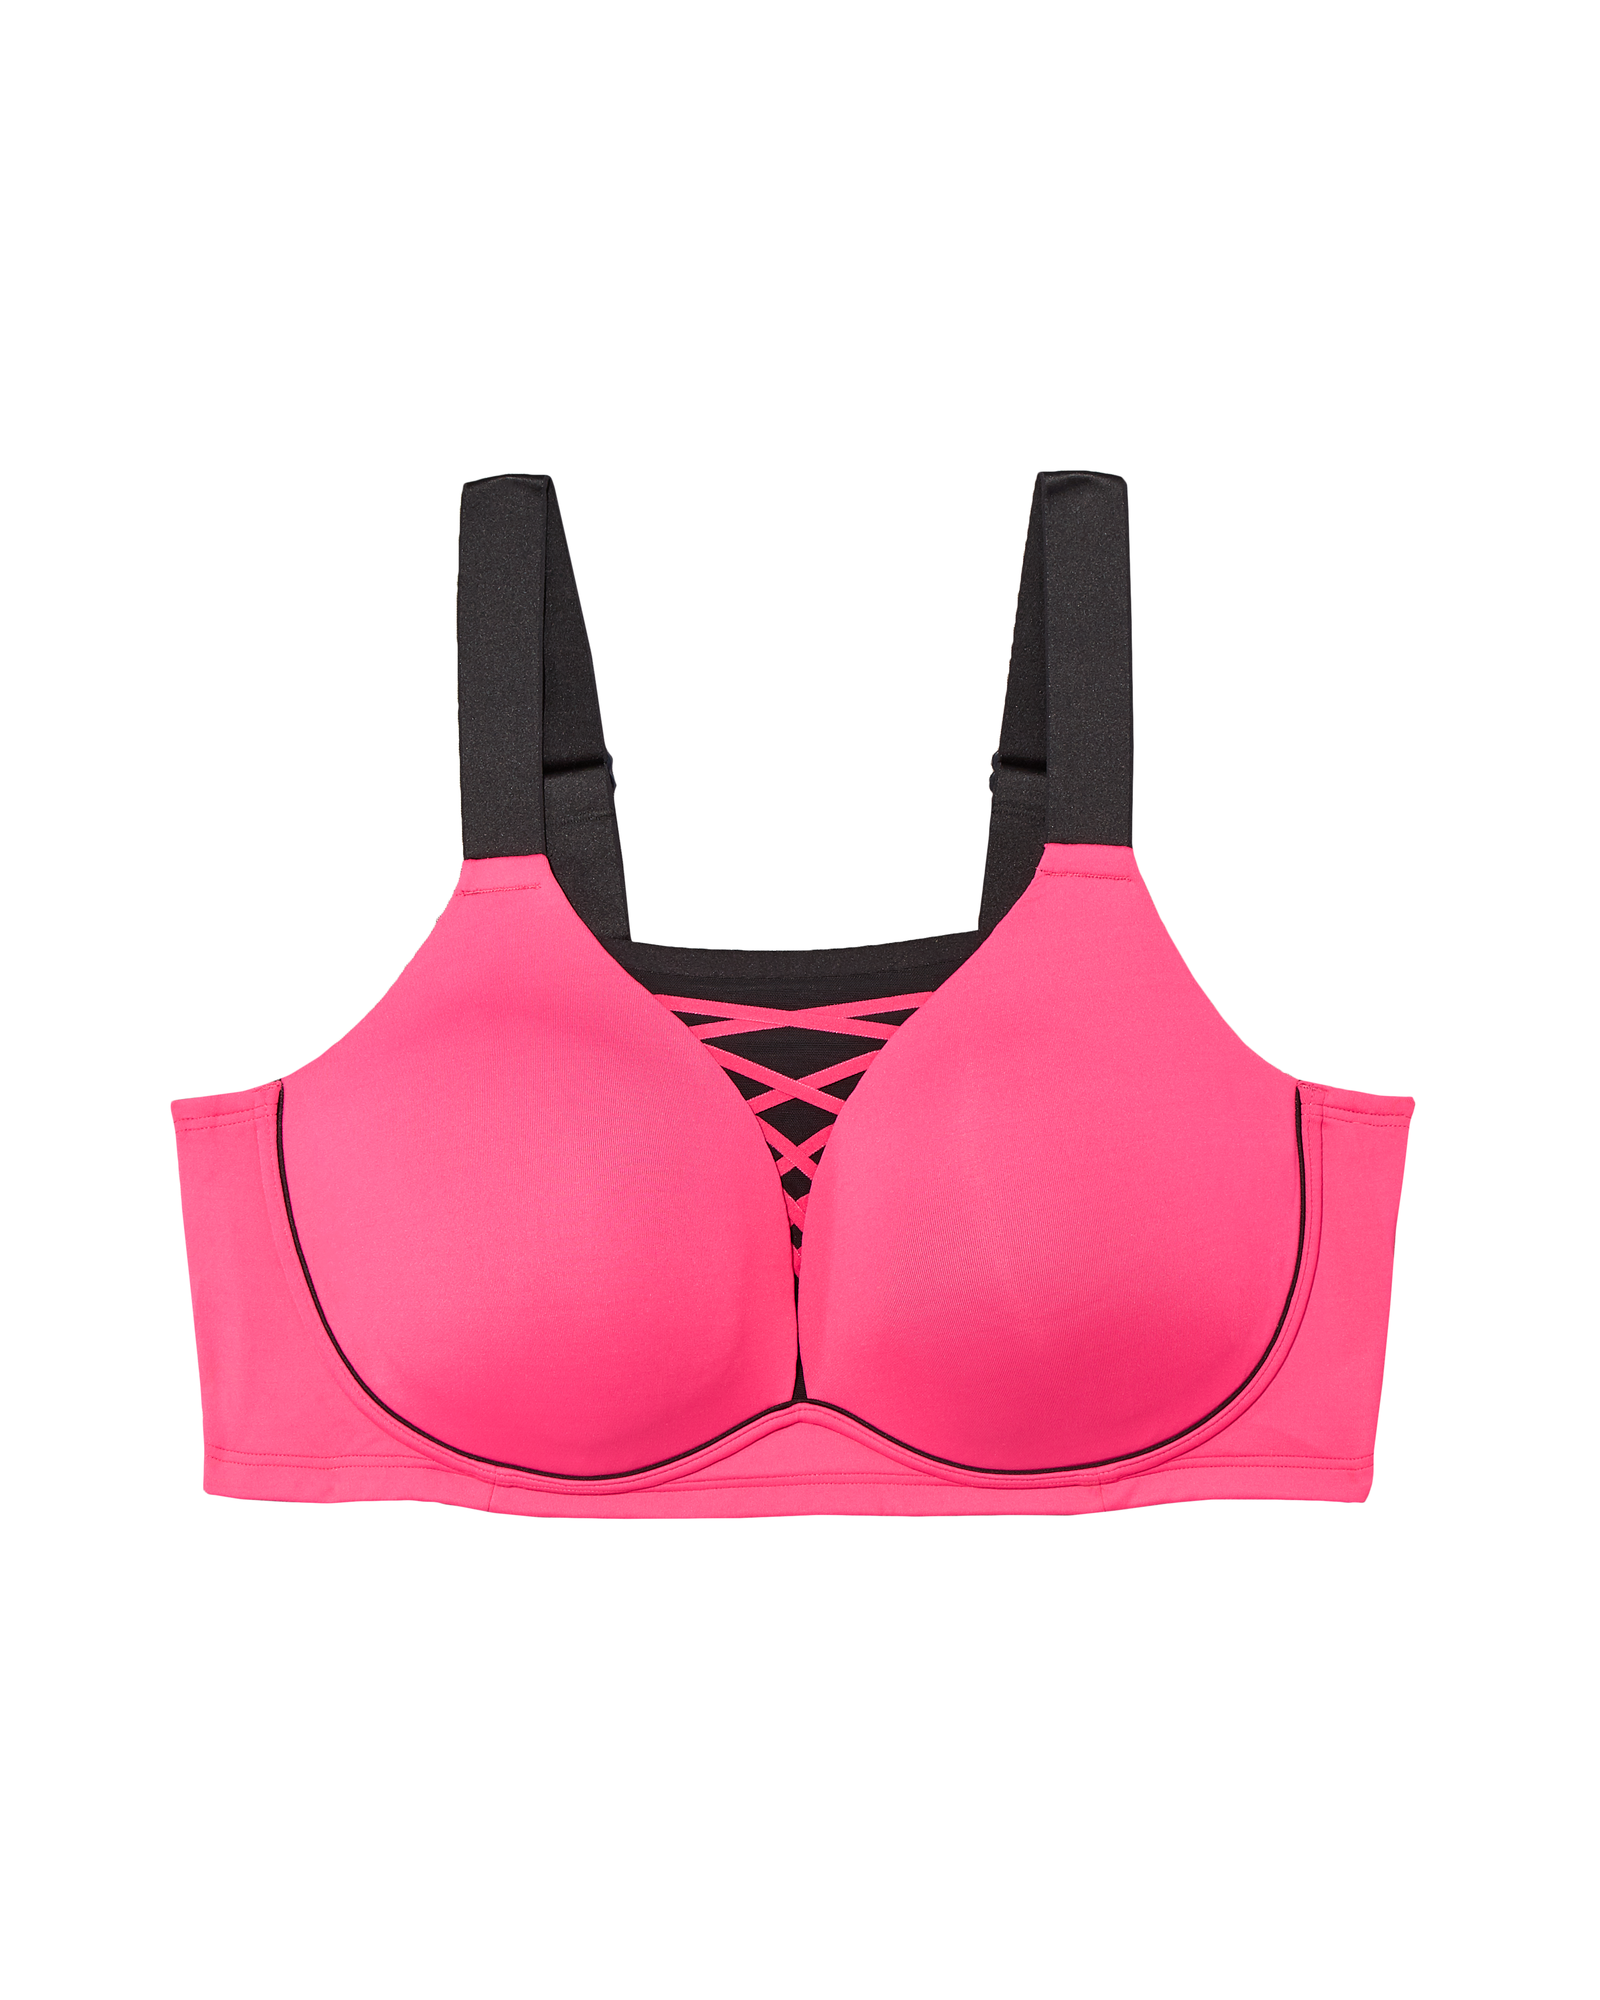 Daqian Clearance Bras for Women Women's Plus Size Bra No Steel Ring Push Up  Underwear Vest-Style Sleep Bra Women Bras on Sale Pink 14(XXXL) 